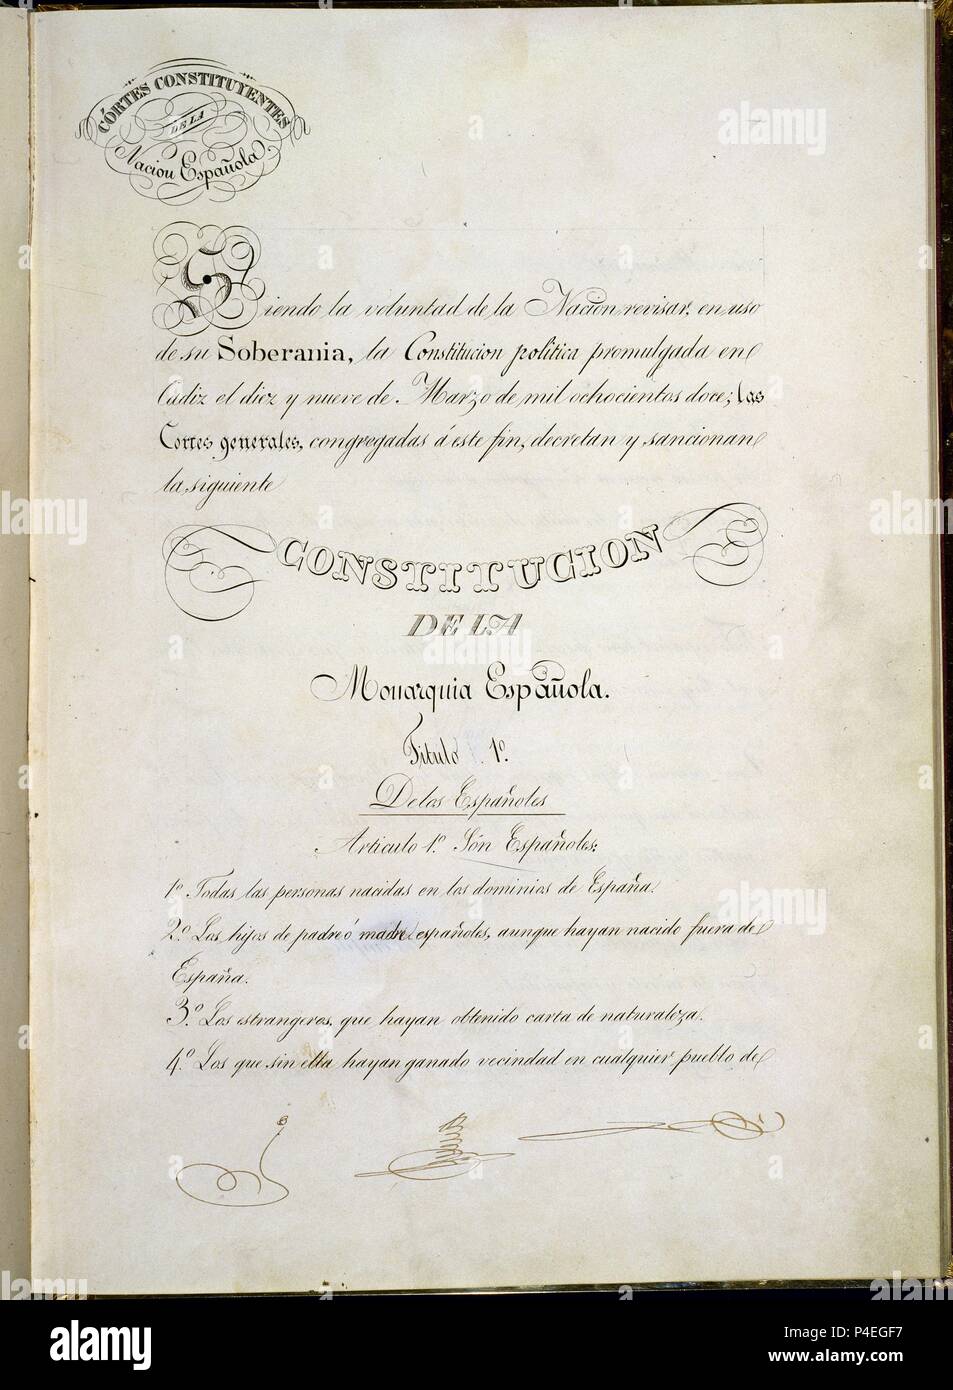 CONSTITUCION 1837-CORTES GENERALES DECRETAN Y SANCIONAN NUEVA CONSTITUCION-PORTADA-. Location: CONGRESO DE LOS DIPUTADOS-BIBLIOTECA, MADRID, SPAIN. Stock Photo